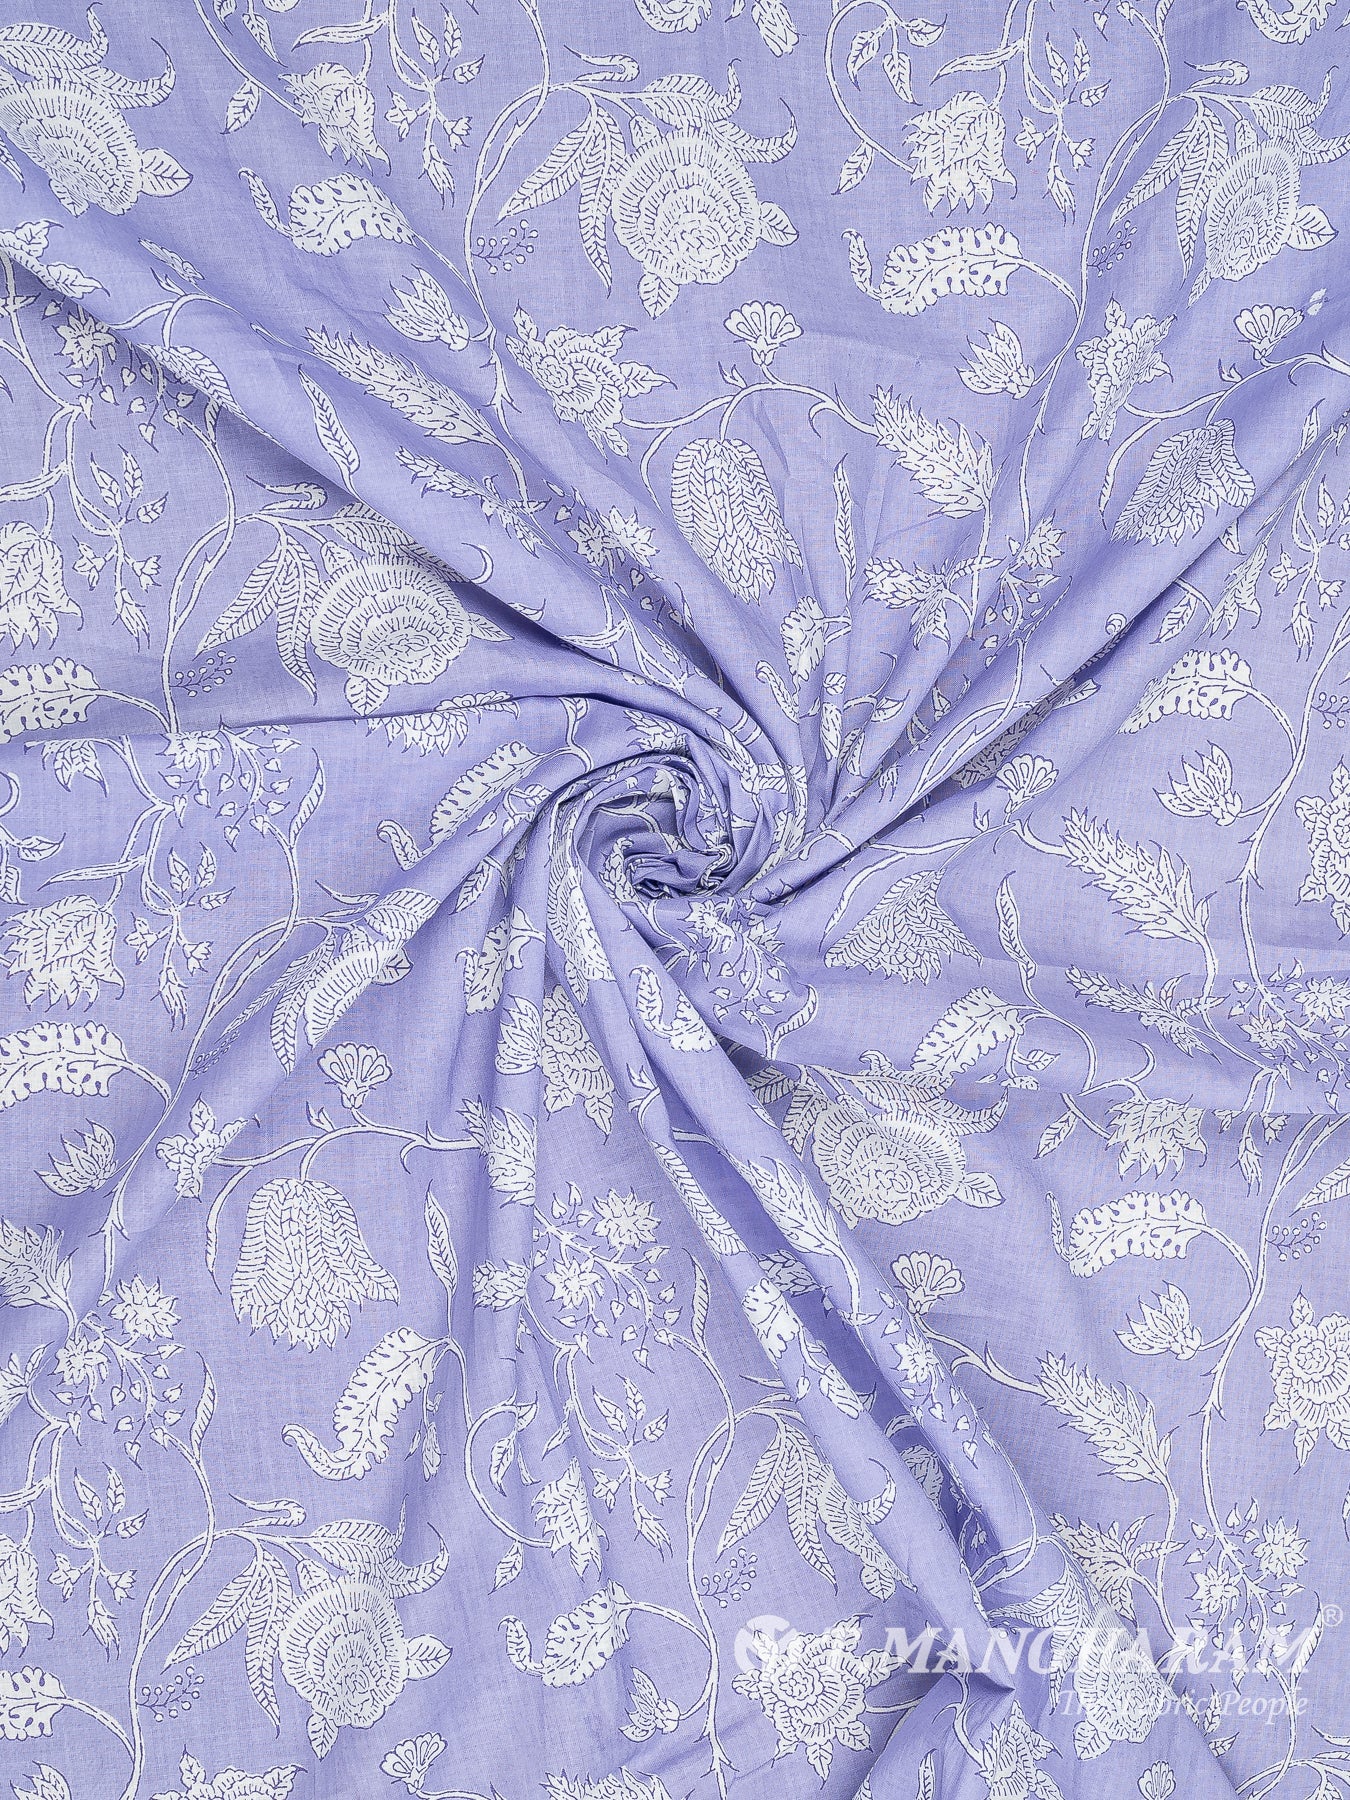 Violet Cotton Fabric - EC8329 view-1